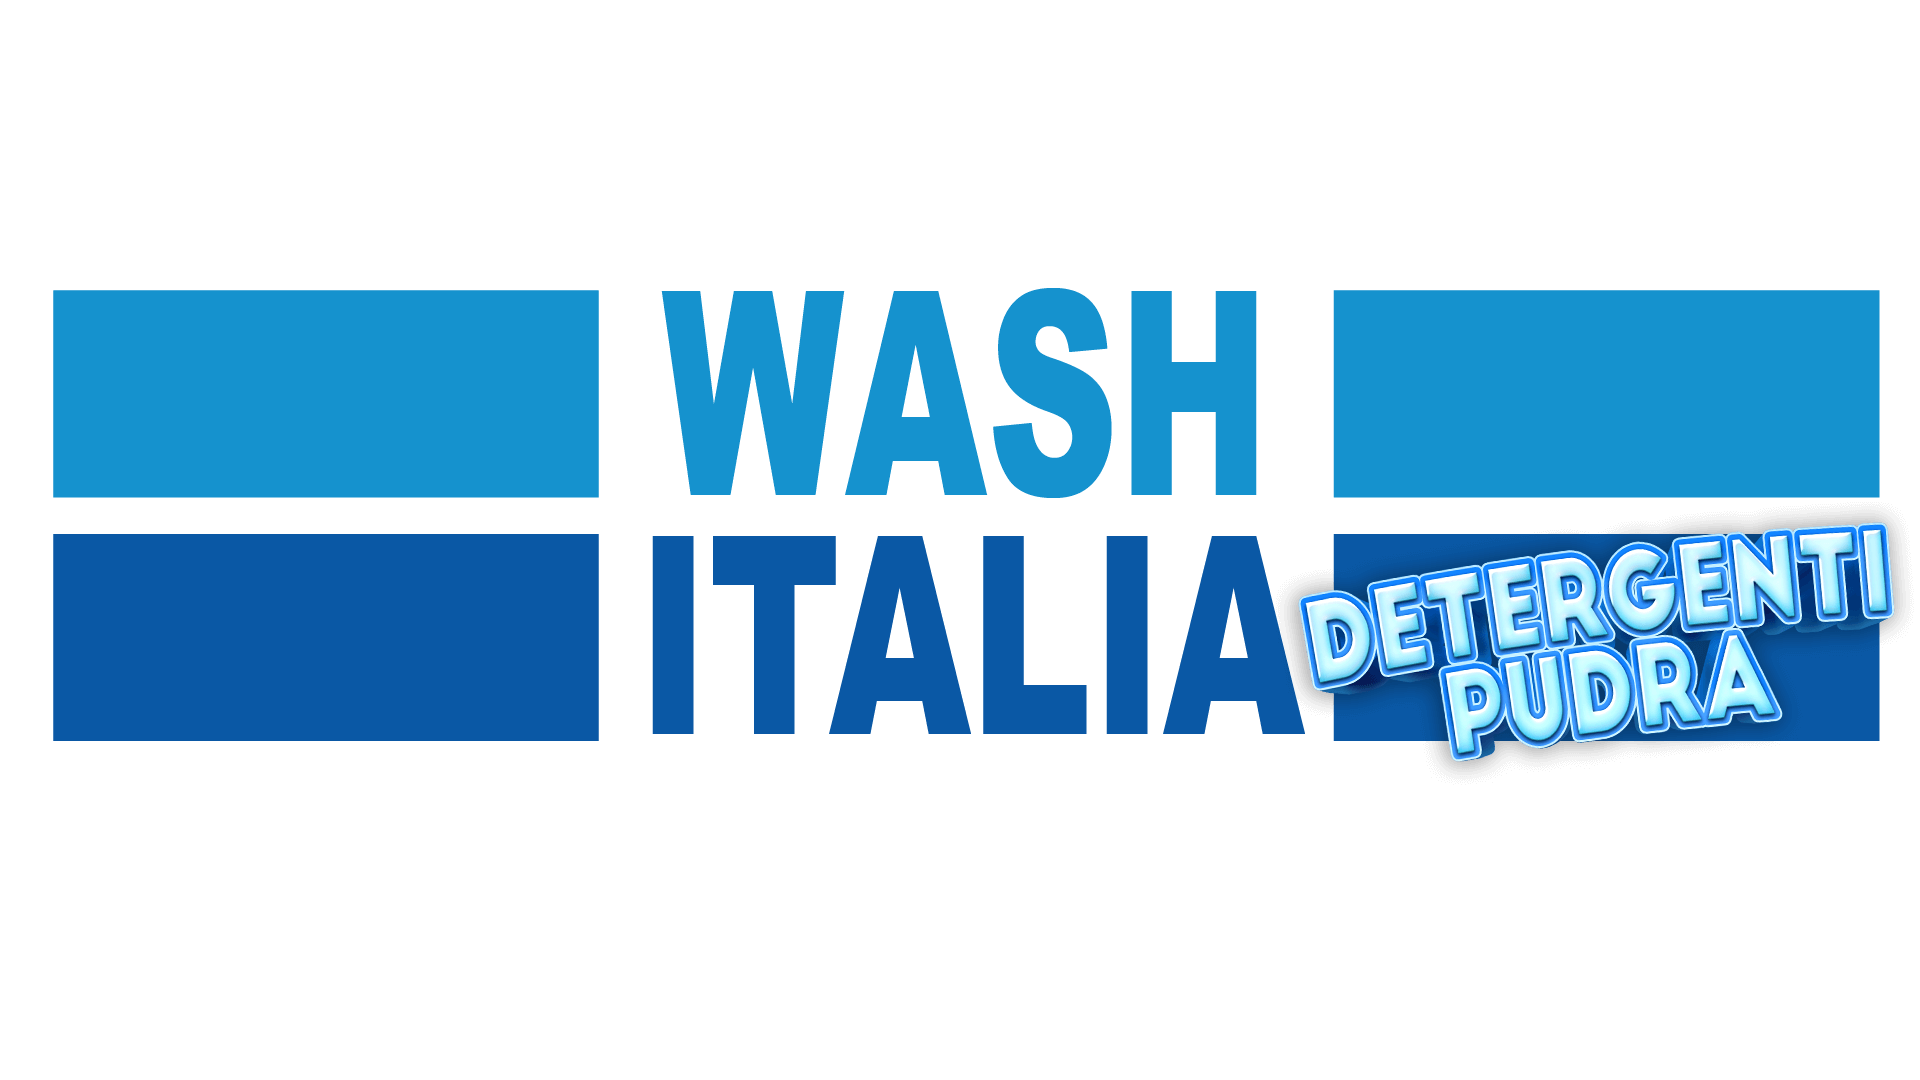 Detergenti pudra Wash Italia